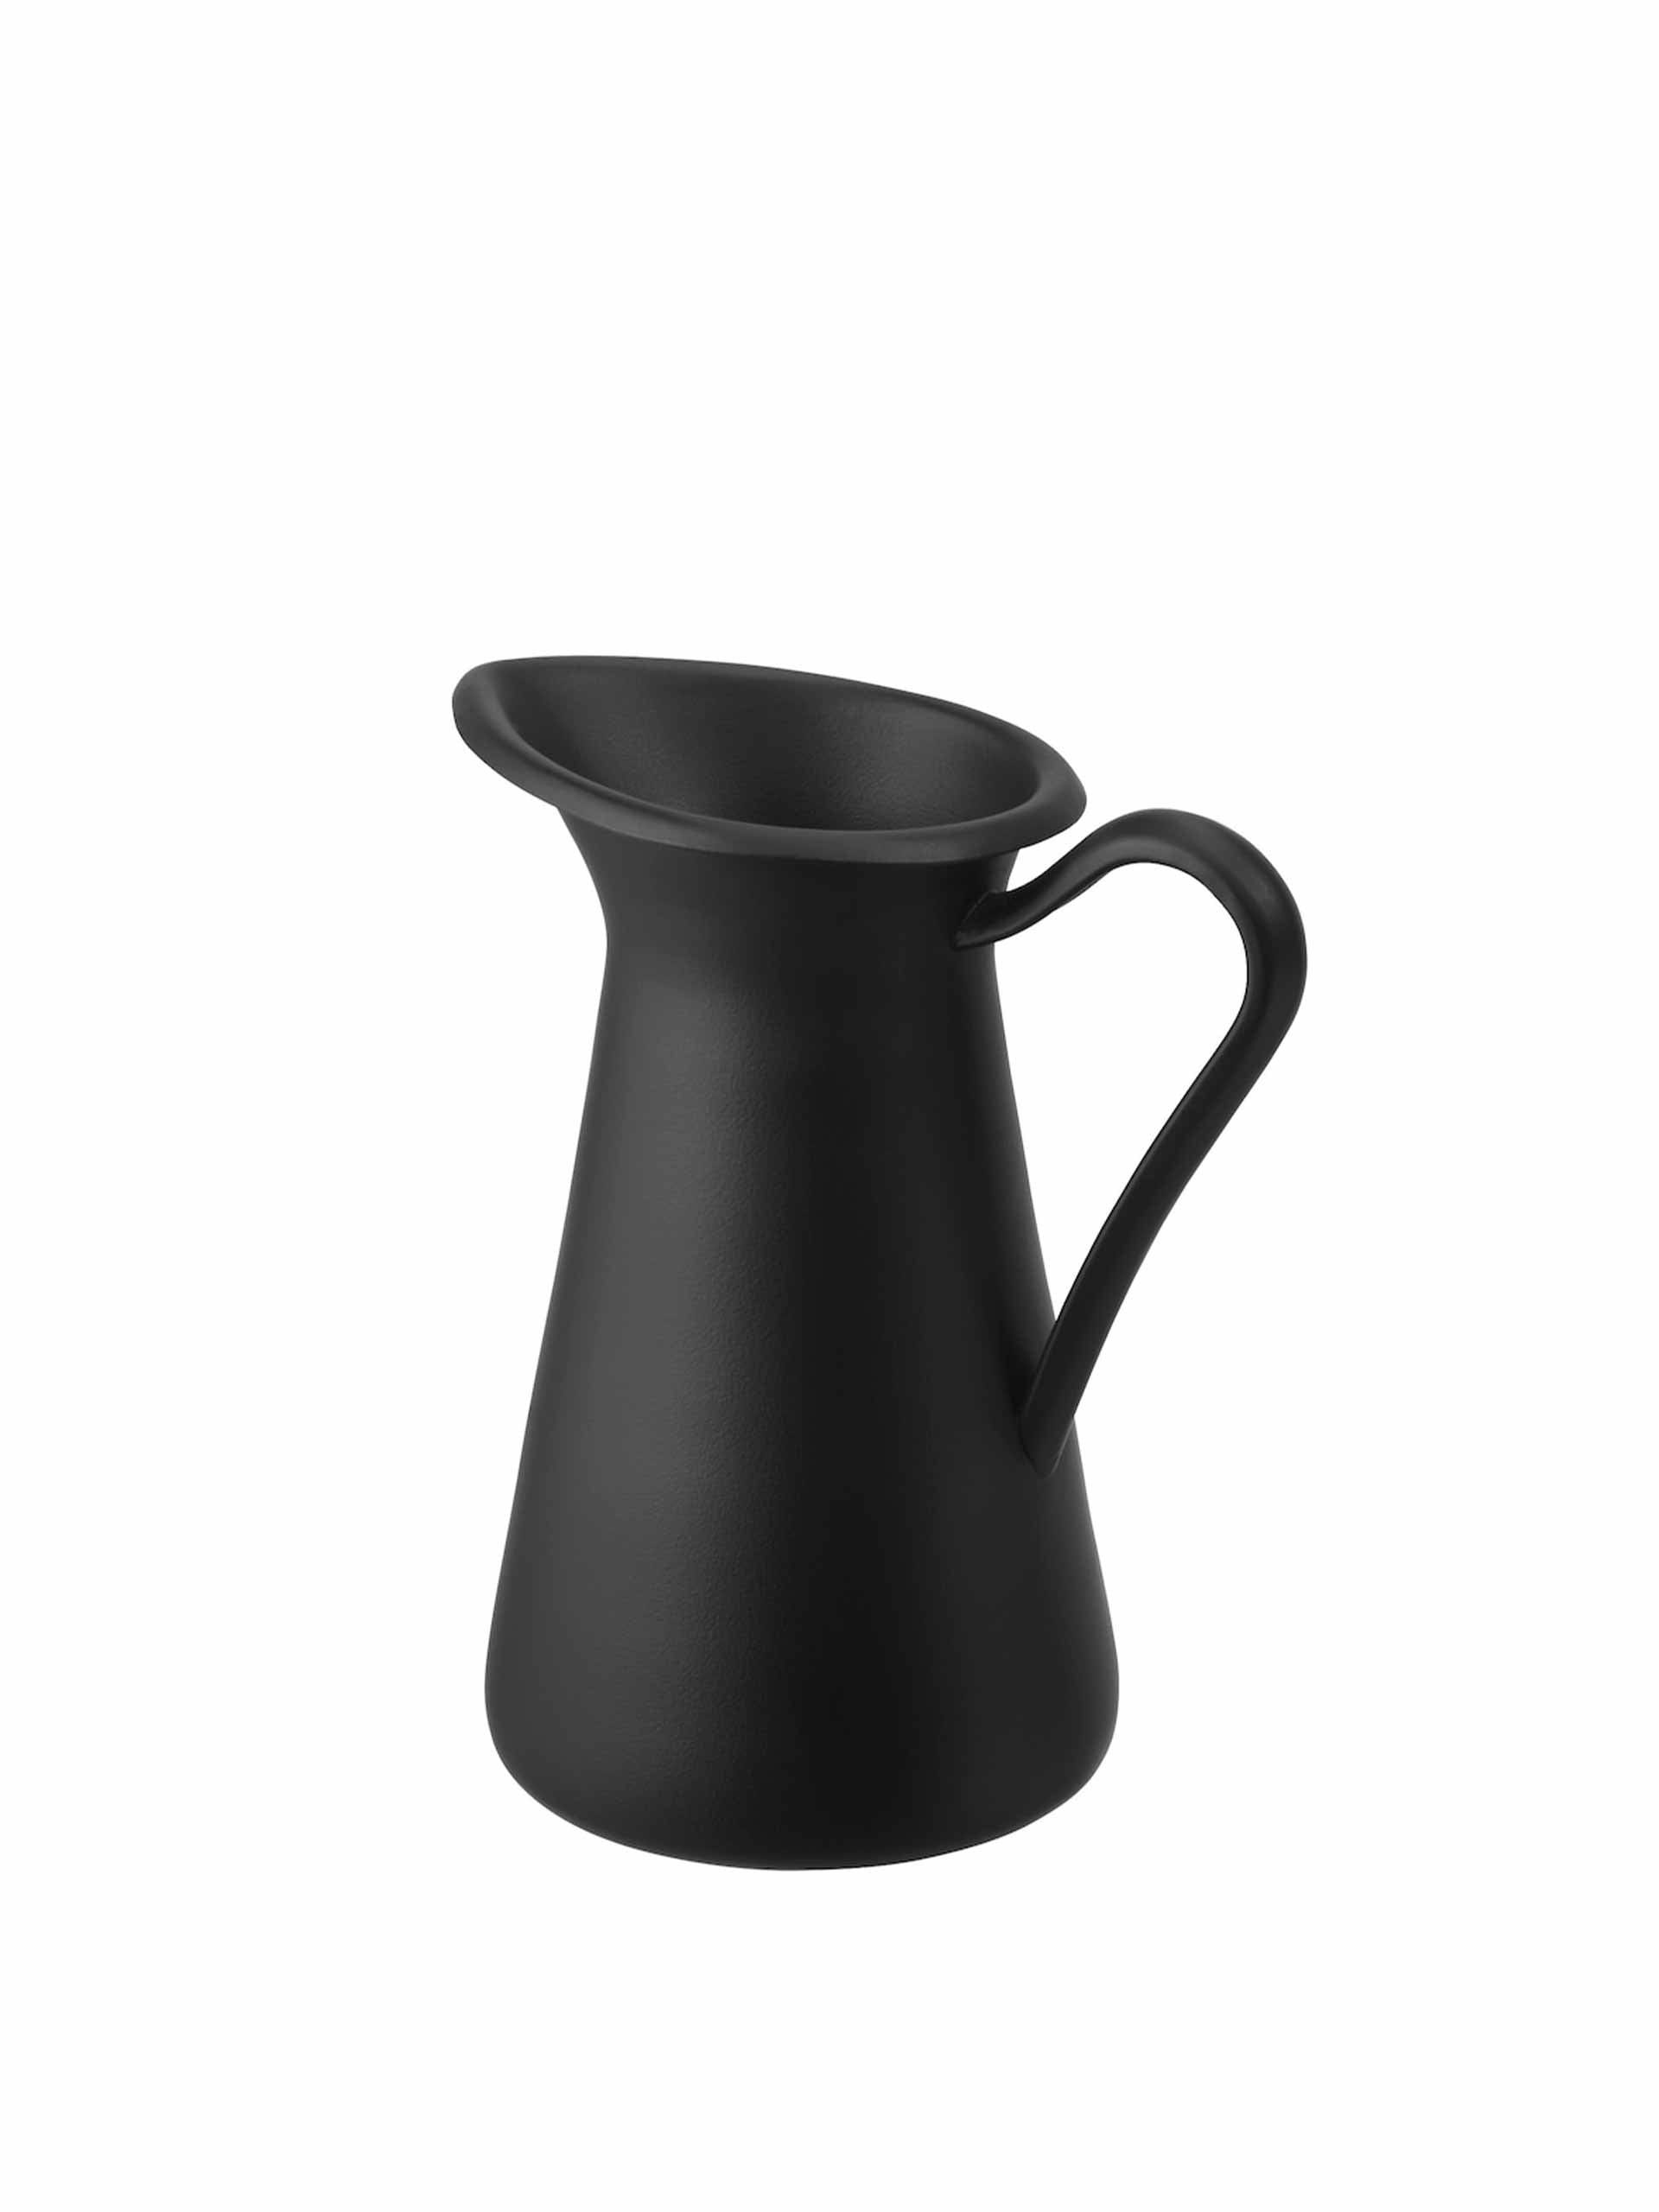 Black enamel vase